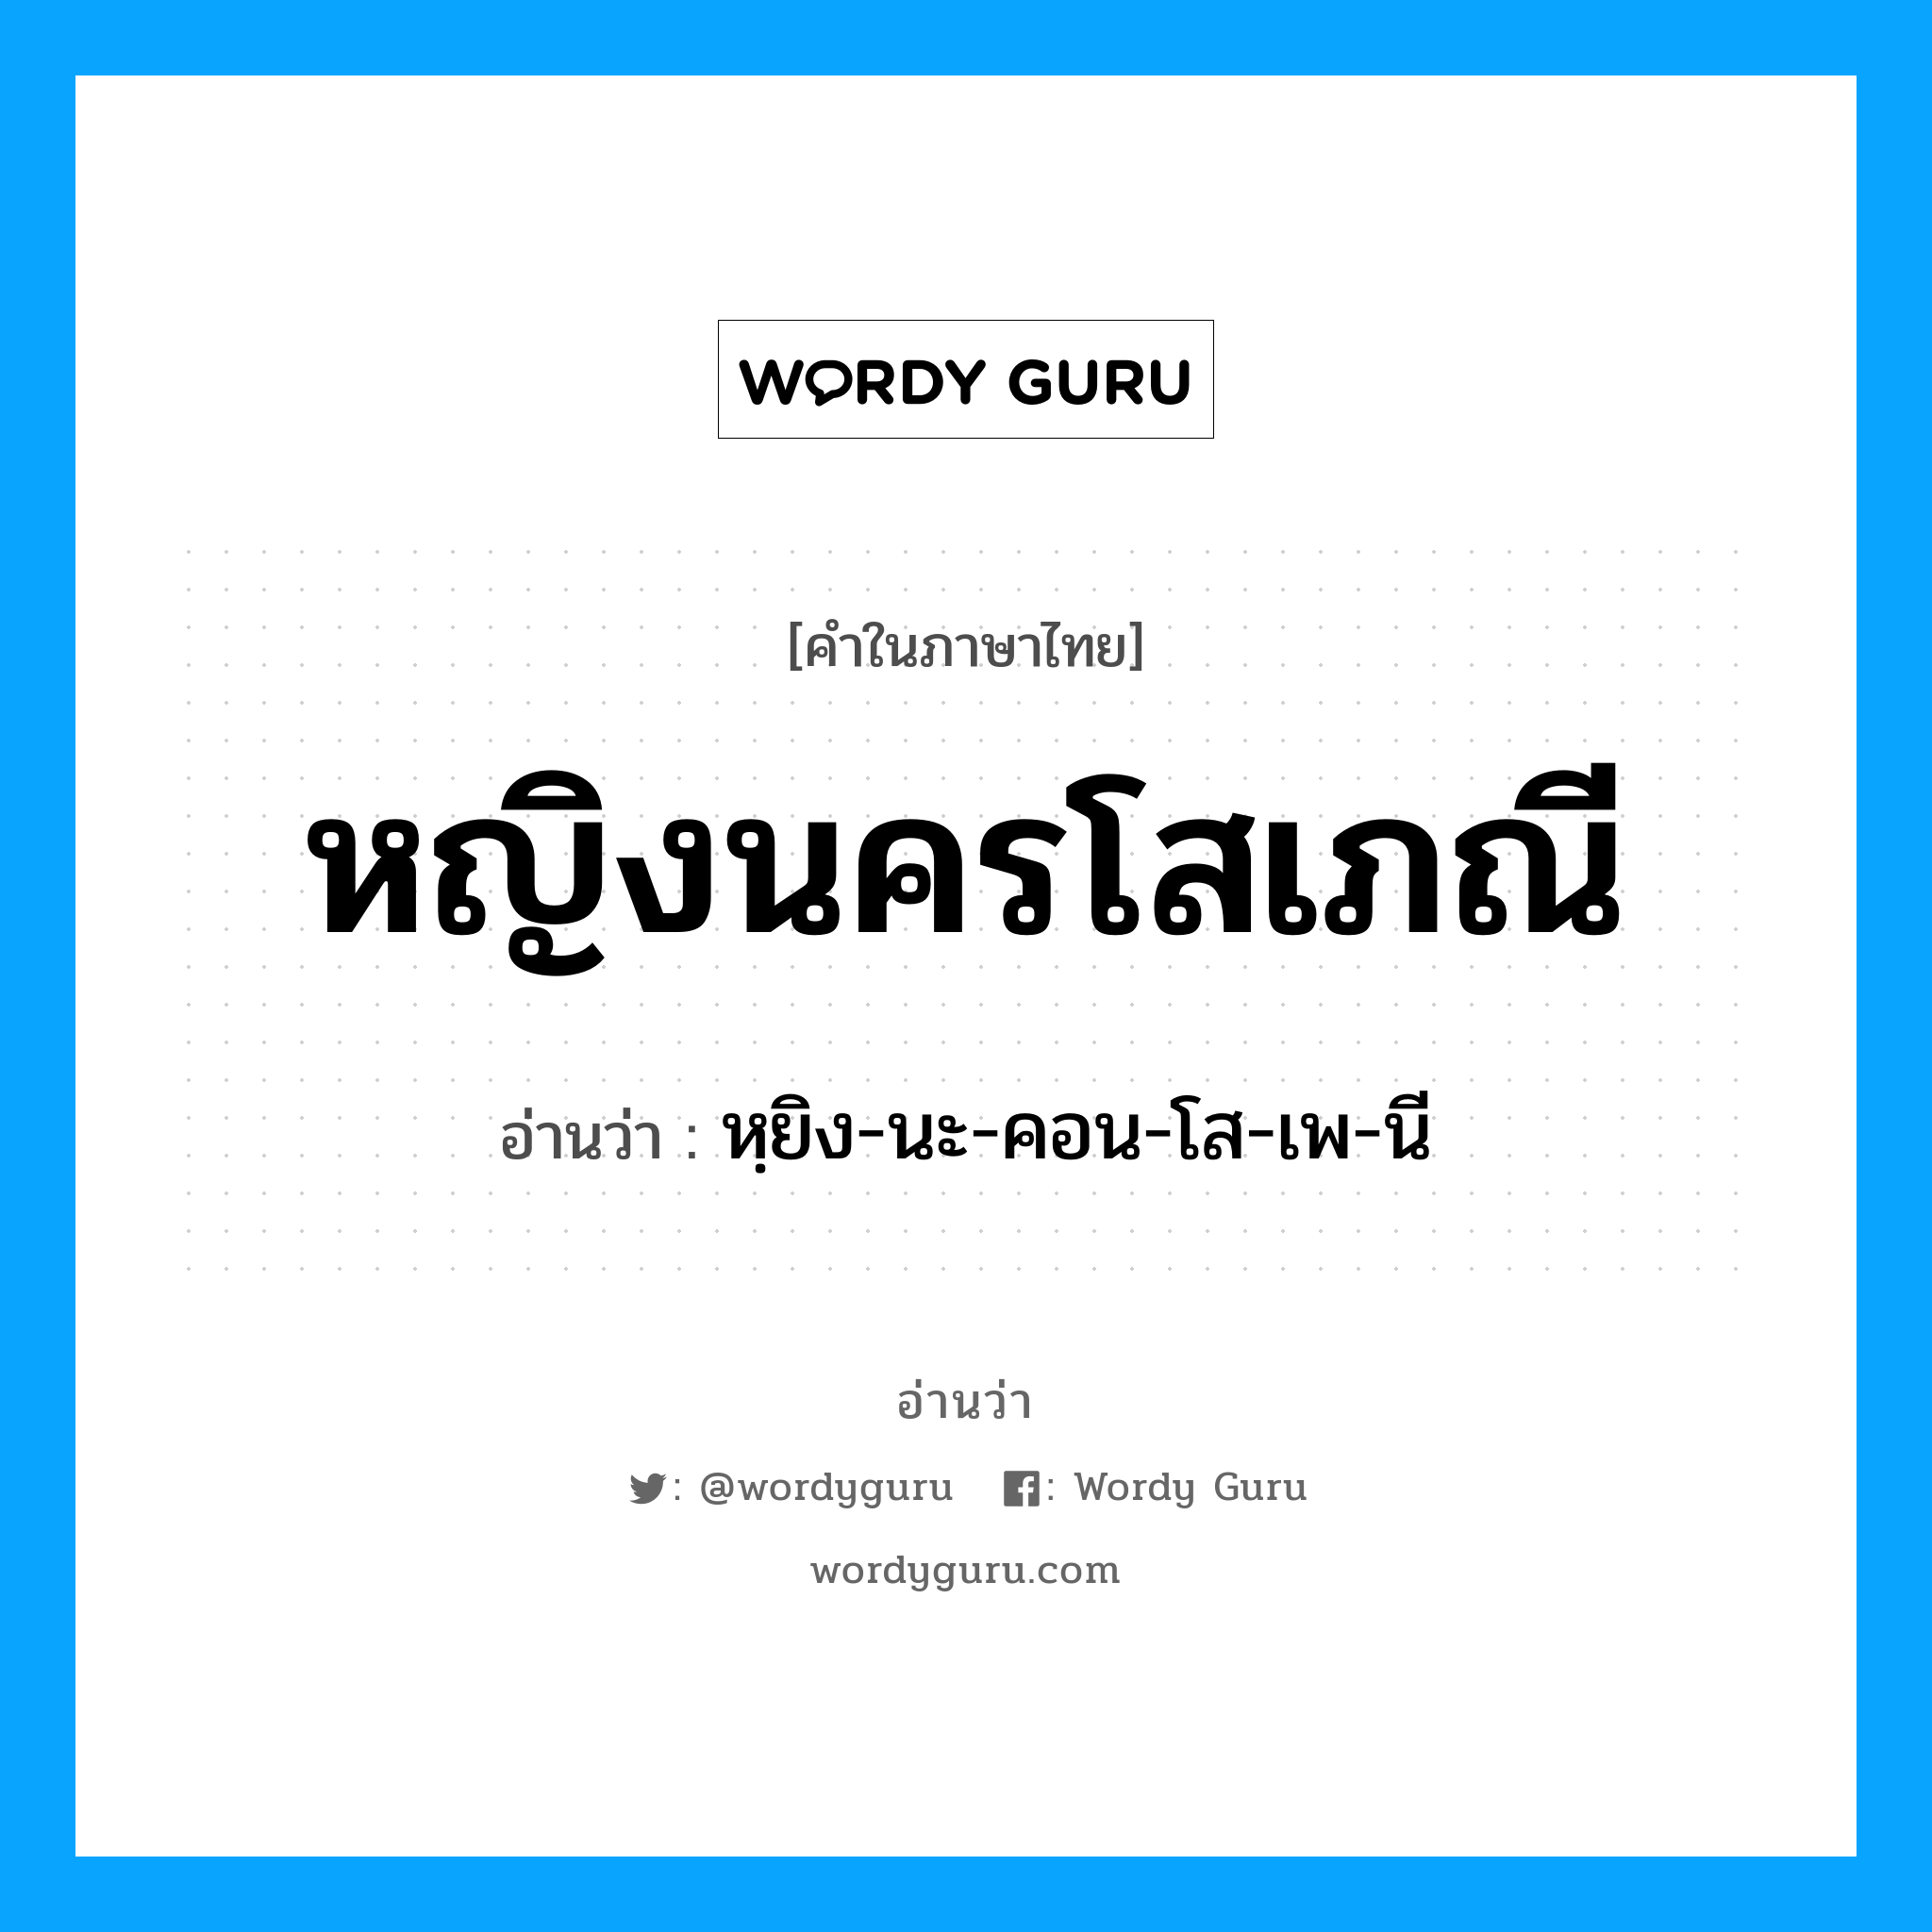 หฺยิง-นะ-คอน-โส-เพ-นี เป็นคำอ่านของคำไหน?, คำในภาษาไทย หฺยิง-นะ-คอน-โส-เพ-นี อ่านว่า หญิงนครโสเภณี